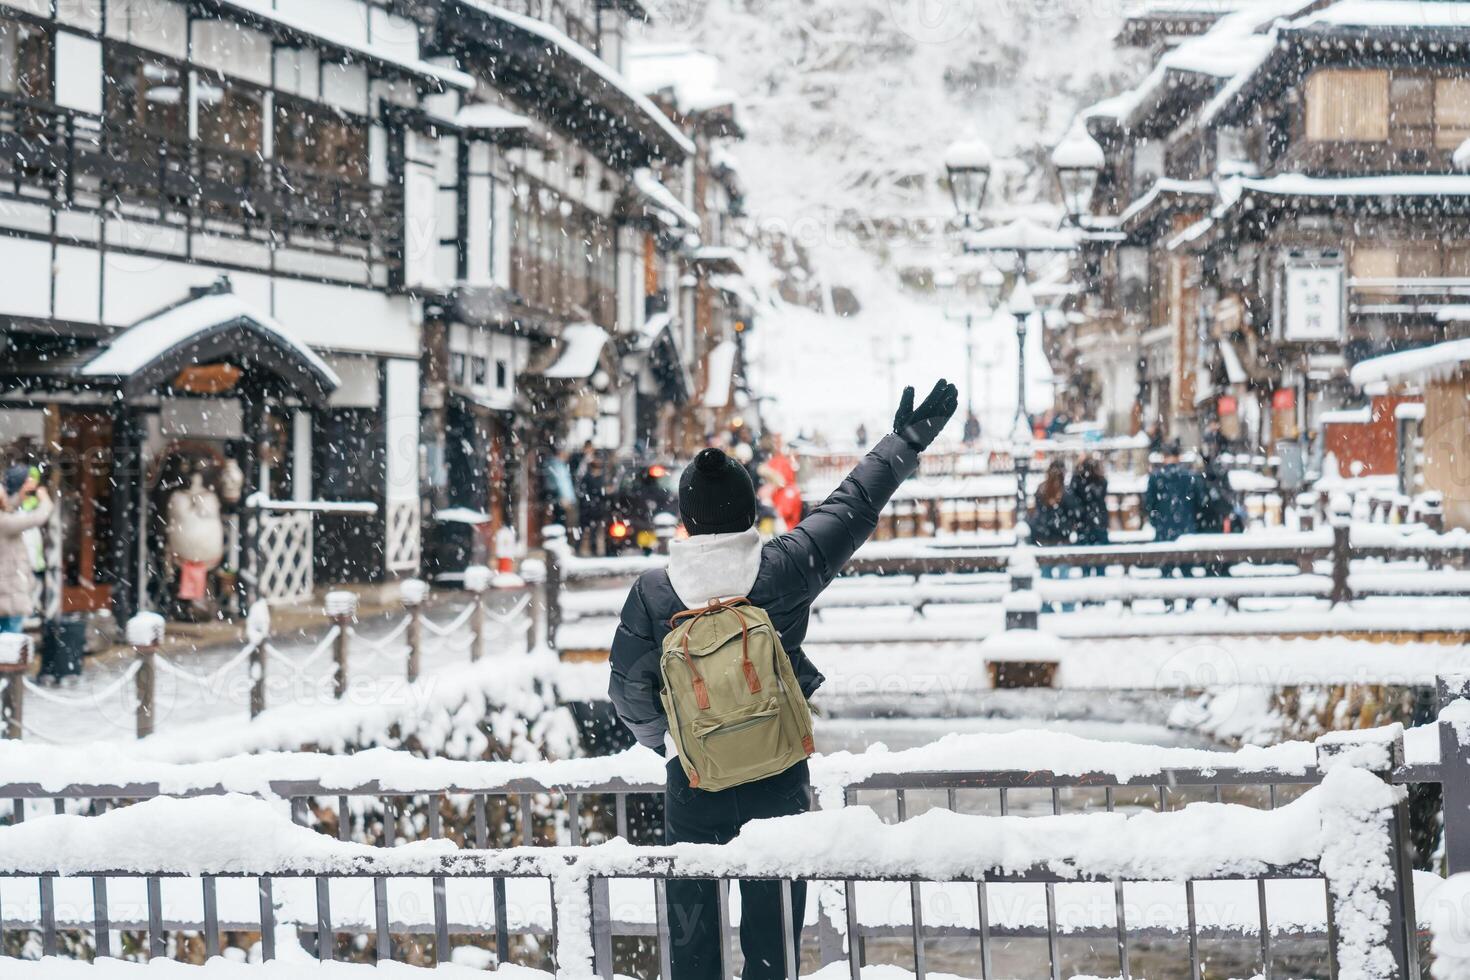 vrouw toerist bezoekende ginzan onsen in yamagata, gelukkig reiziger bezienswaardigheden bekijken Japans onsen dorp met sneeuw in winter seizoen. mijlpaal en populair voor attractie in Japan. reizen en vakantie concept foto